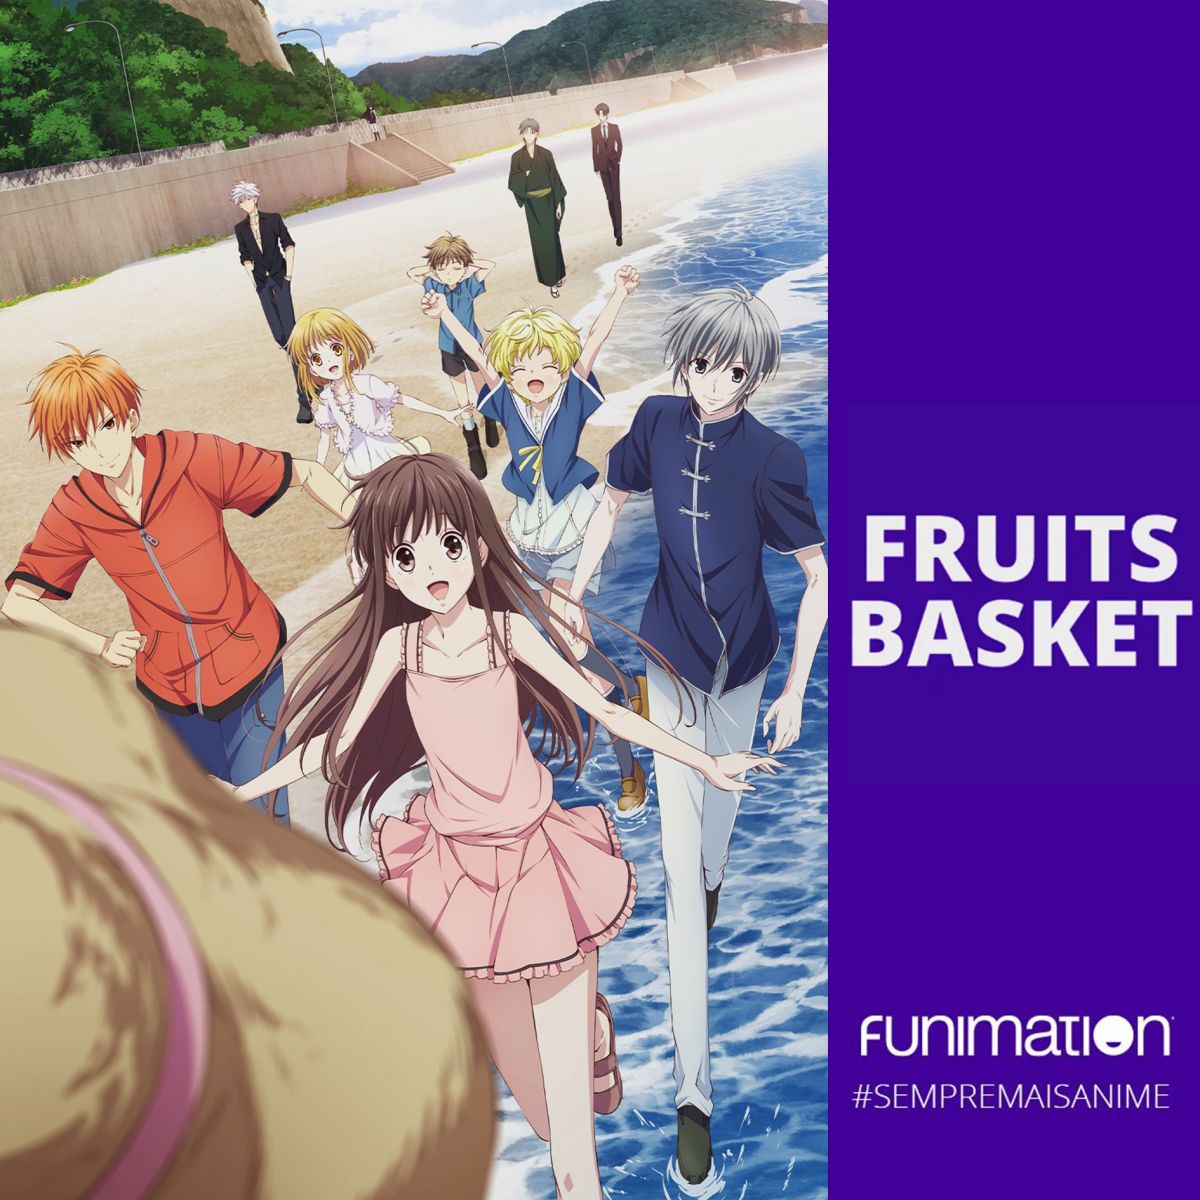 Fruits Basket: Funimation adia estreia de dublagem da 2ª temporada